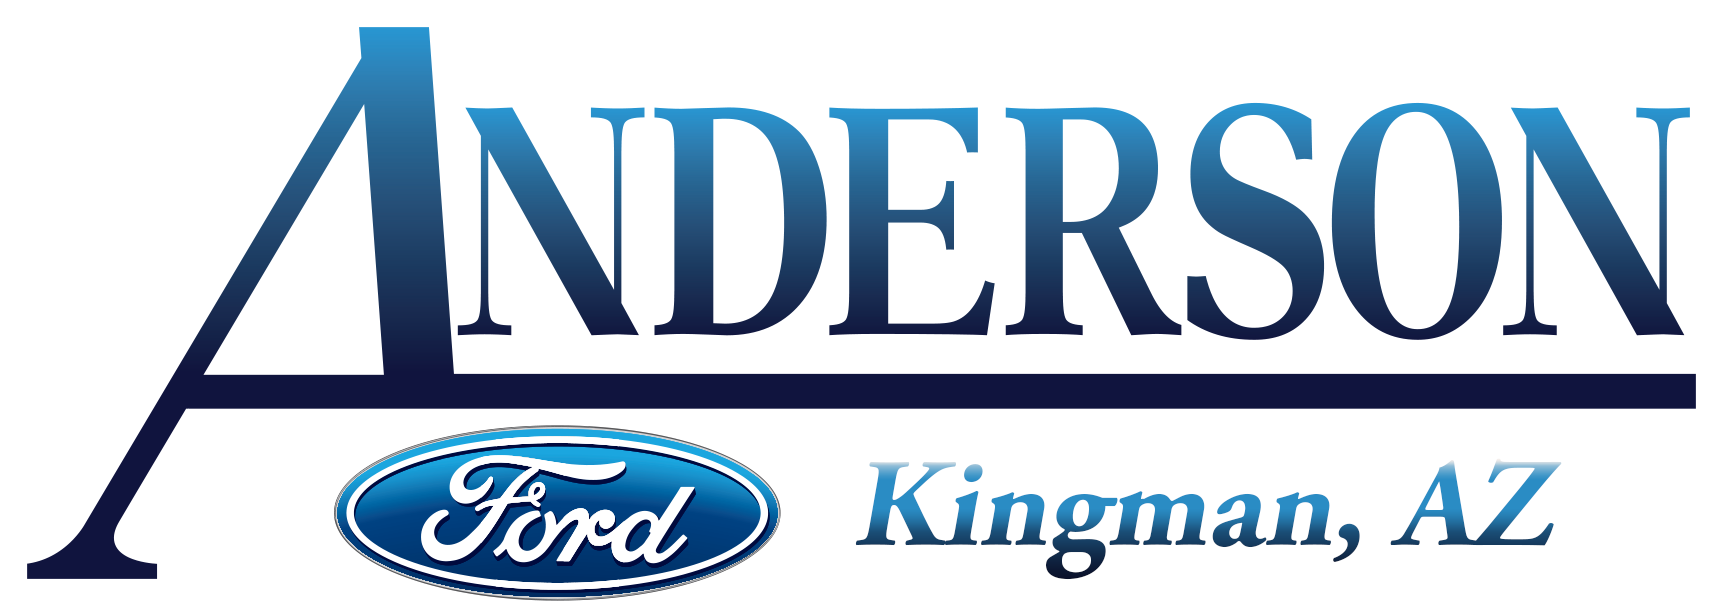 Anderson Kingman Logo